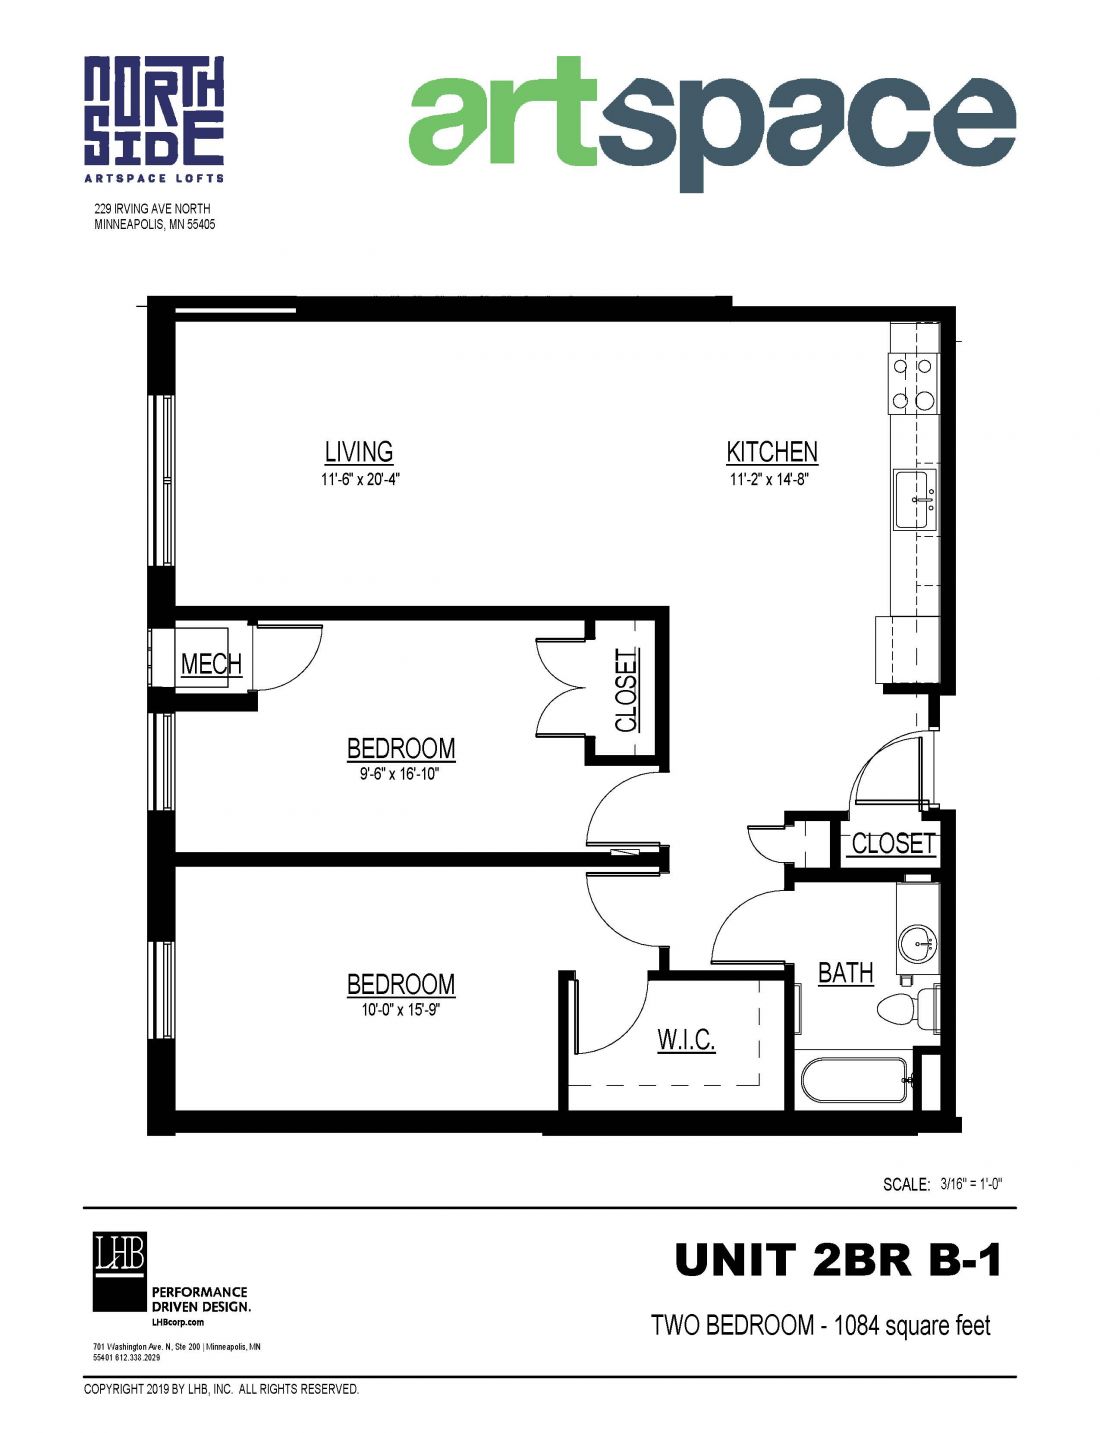 2 Bedroom Floor Plan for Unit 2BR B-1.